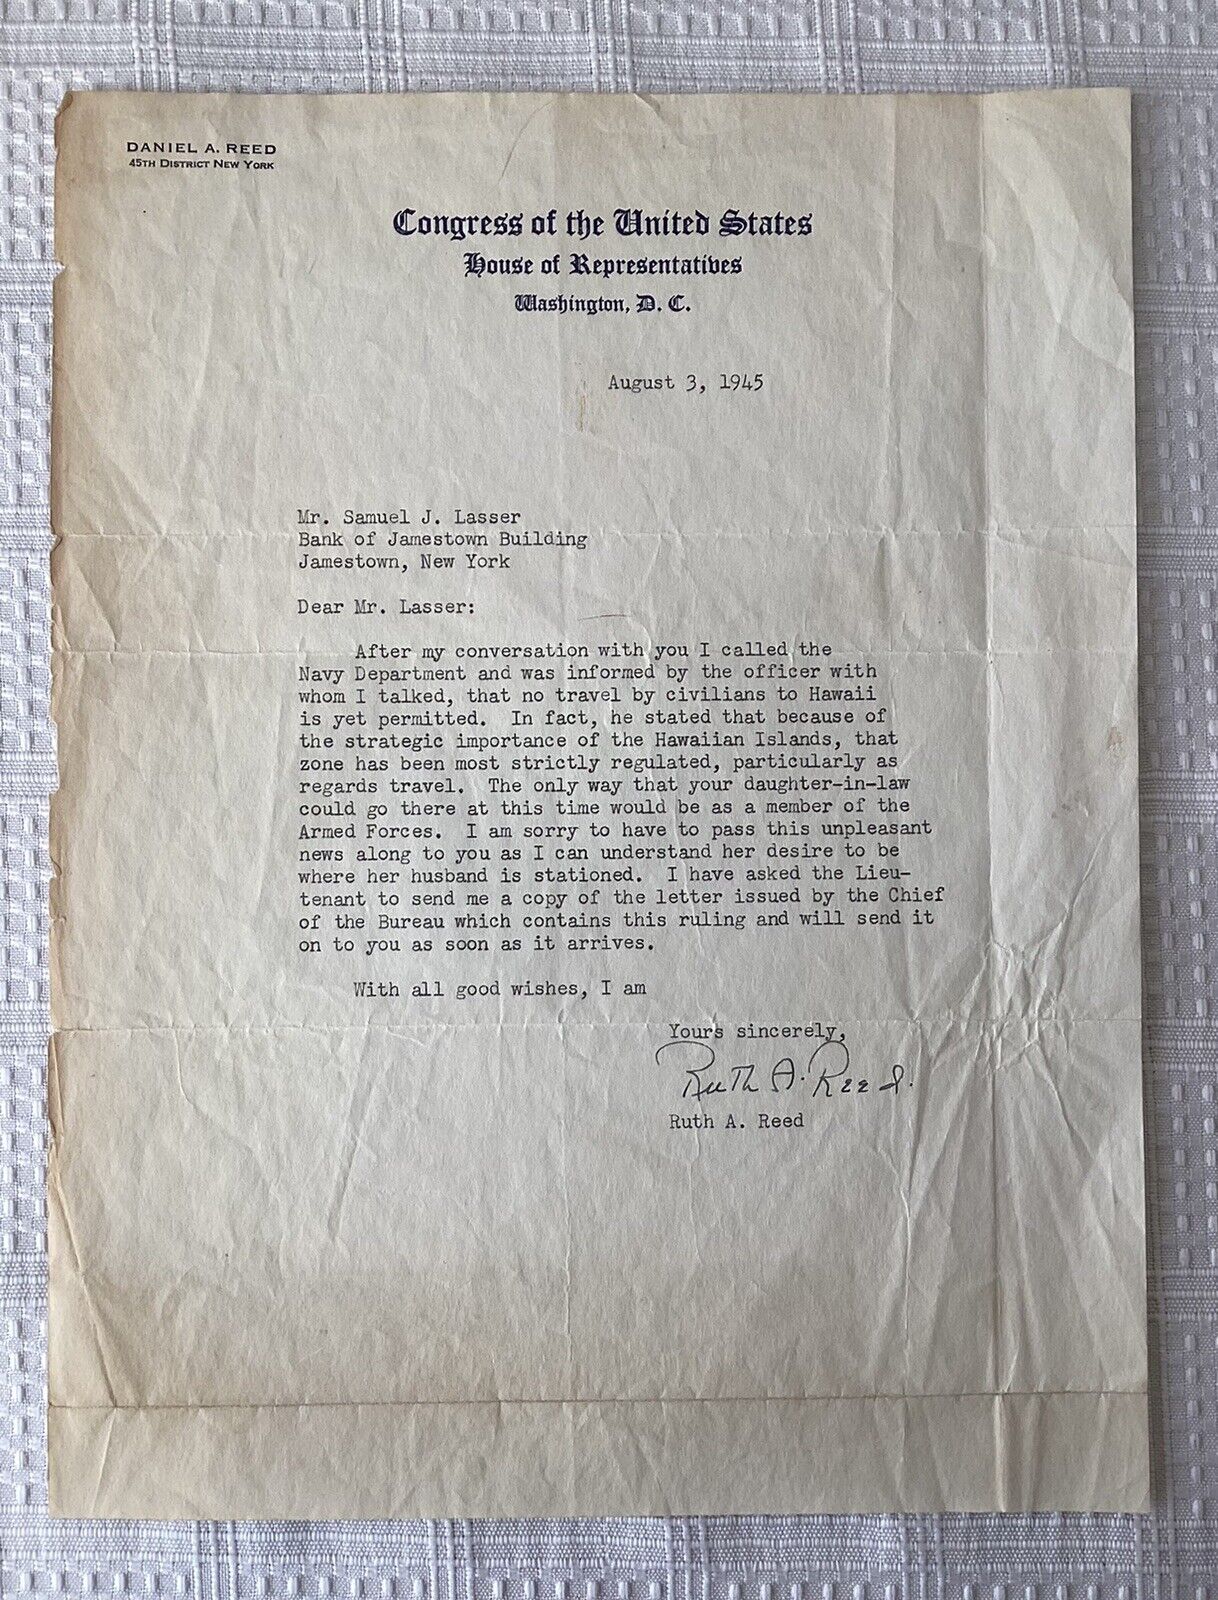 WW2 Era Typed Letter on Congressman Daniel A. Reed Letterhead, 1945